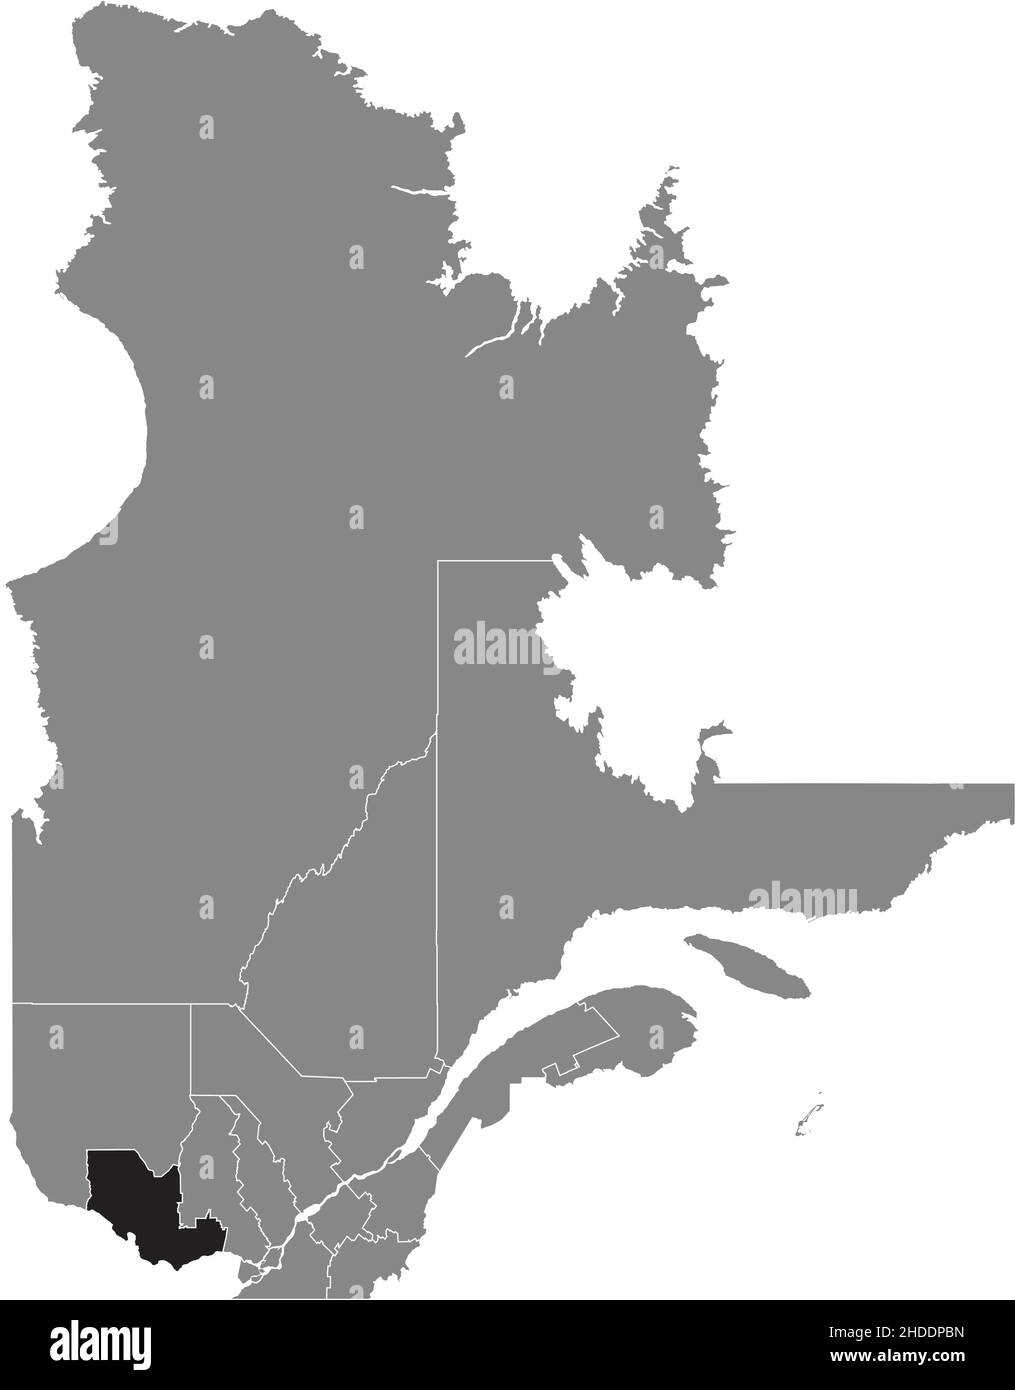 Schwarz flach leer markiert Lageplan der REGION OUTAOUAIS innerhalb der grauen Verwaltungskarte der kanadischen Provinz Quebec, Kanada Stock Vektor